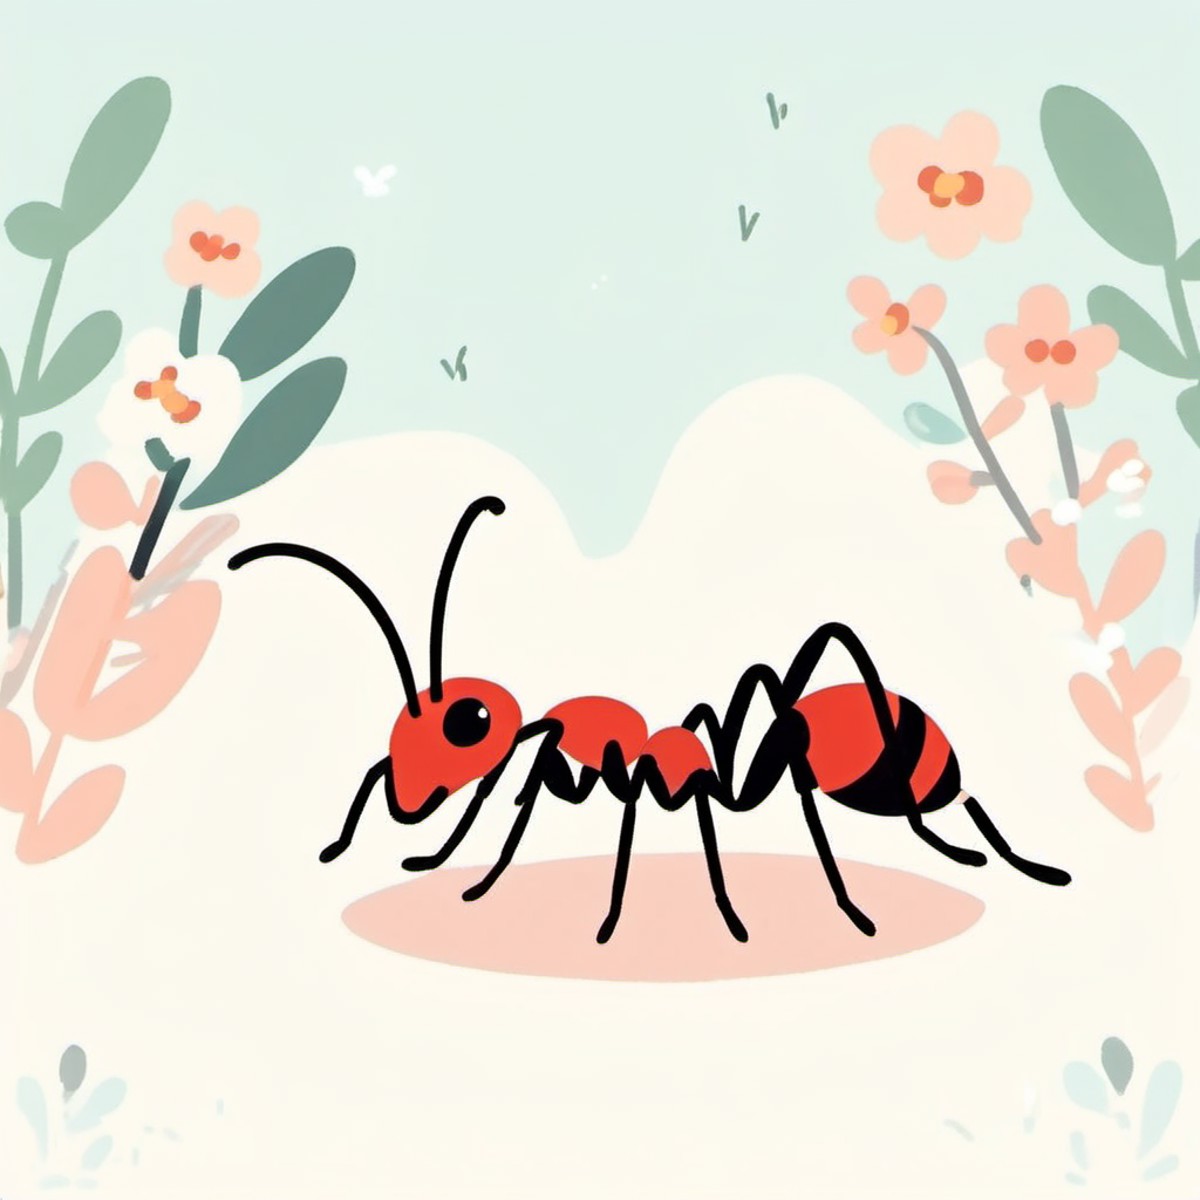 healing ants<lora:[XL]healing_animal:1>